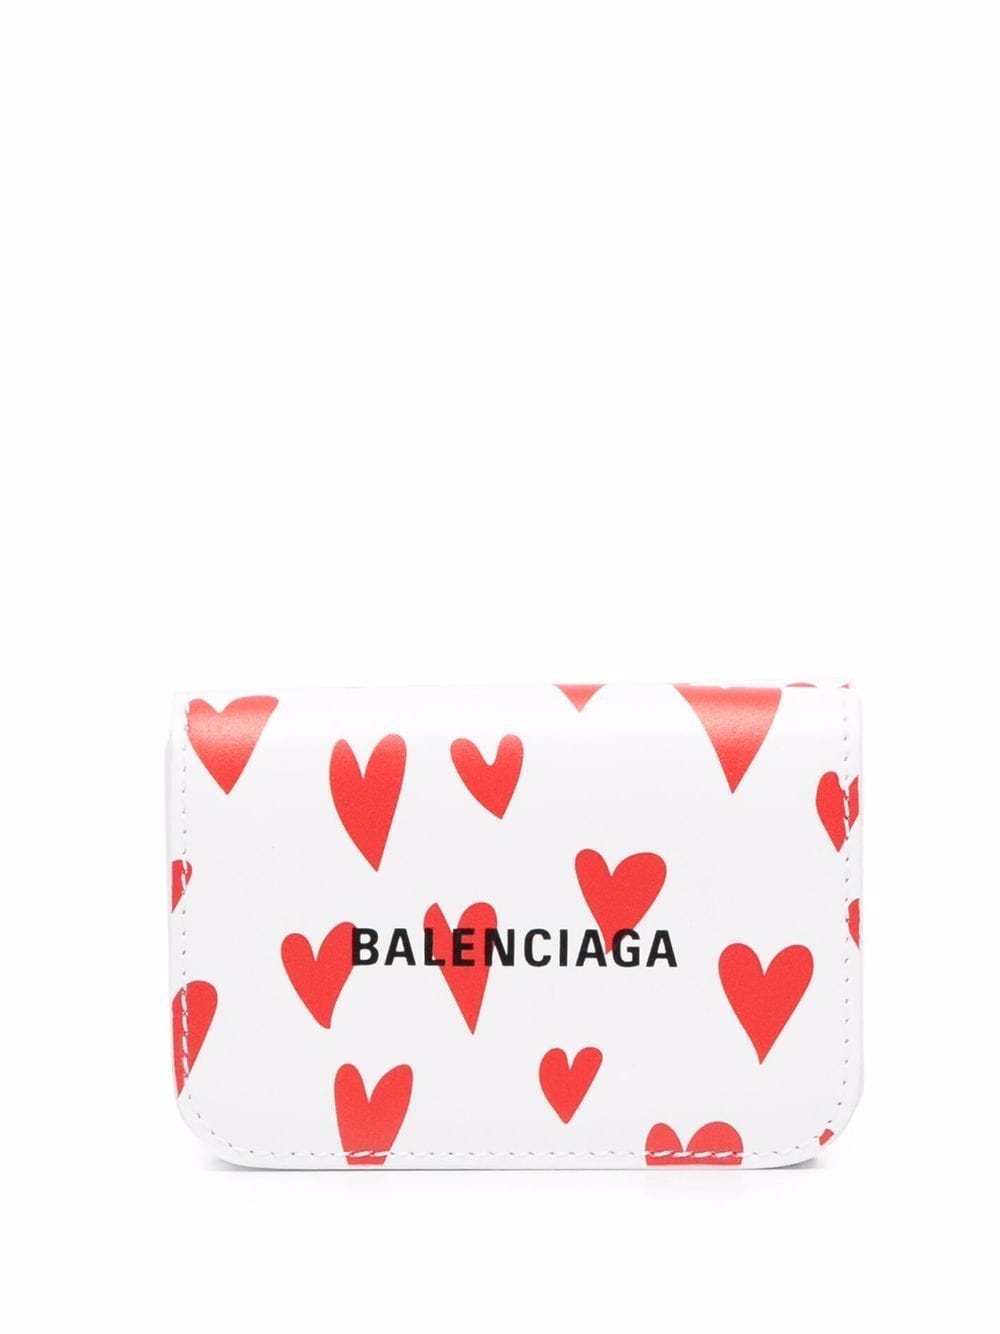 фото Balenciaga мини-кошелек cash с принтом